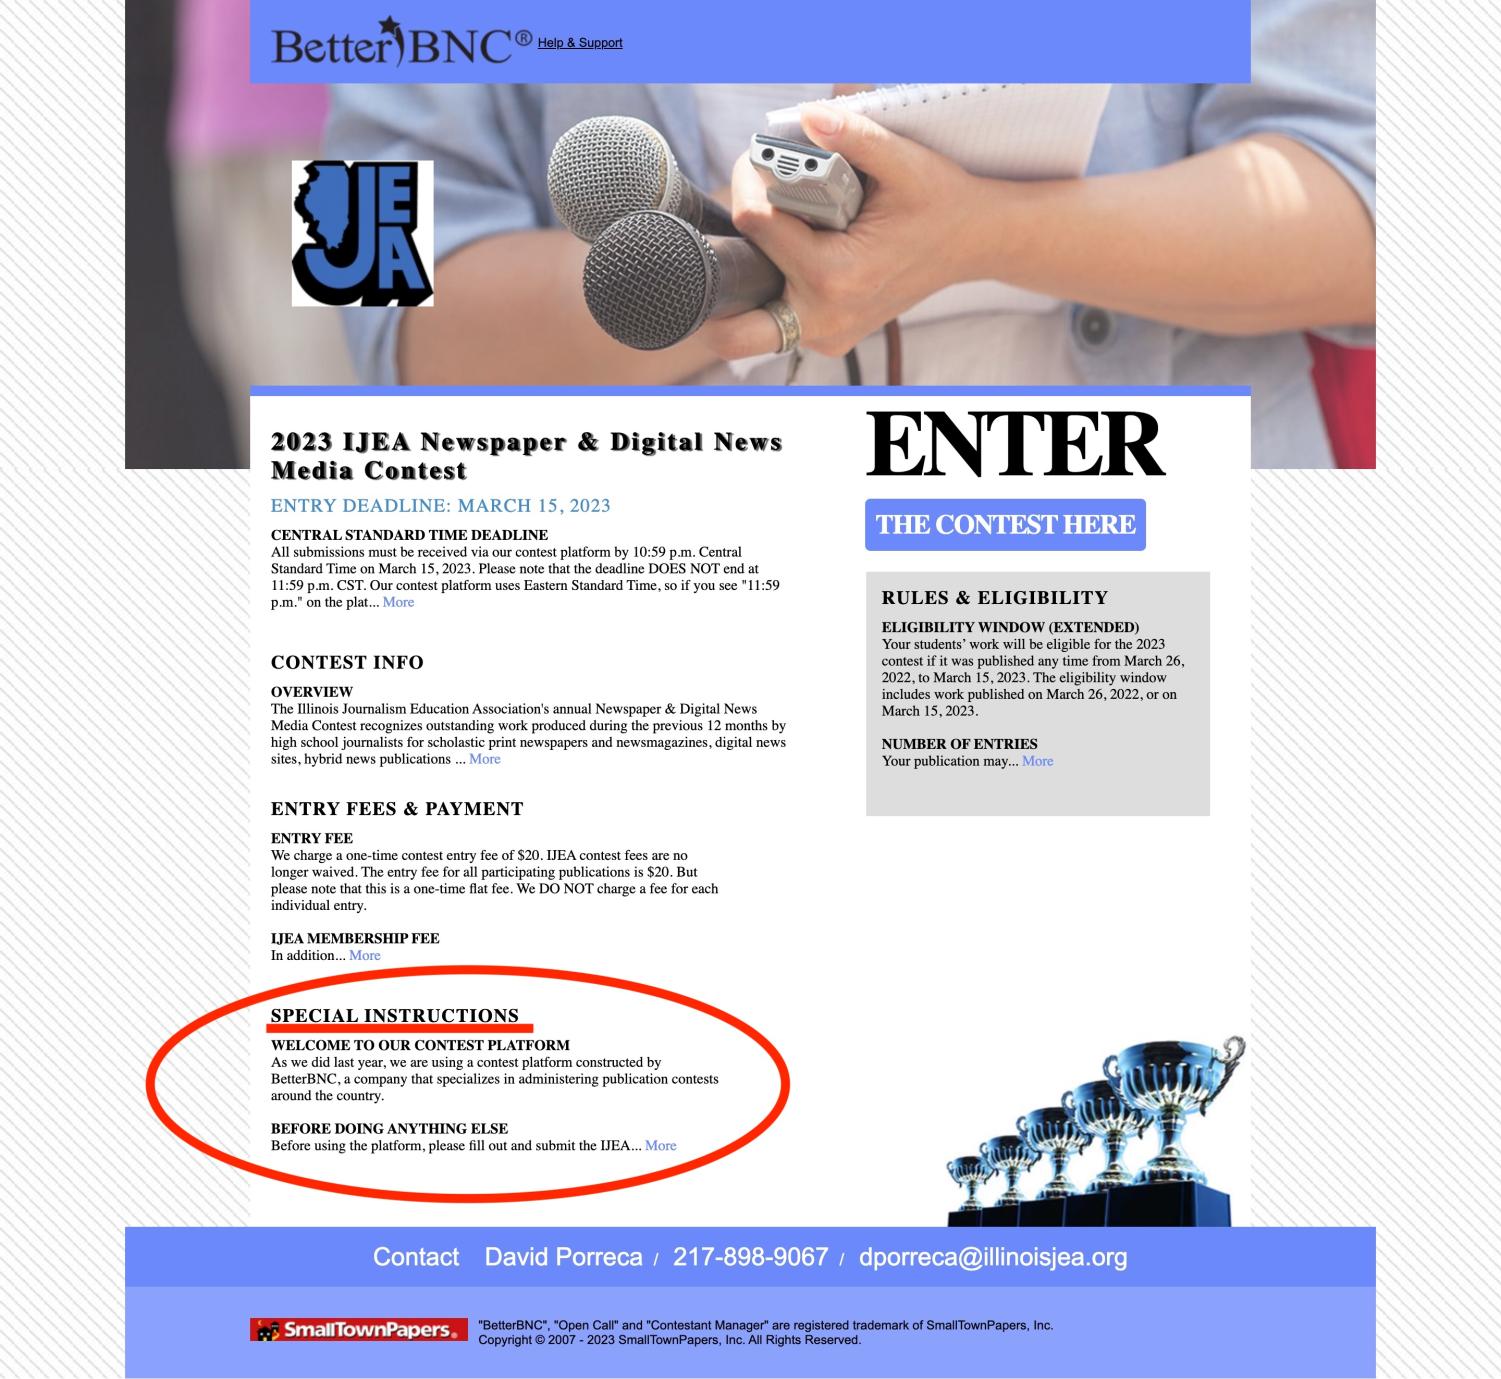 2023 IJEA Newspaper Contest homepage